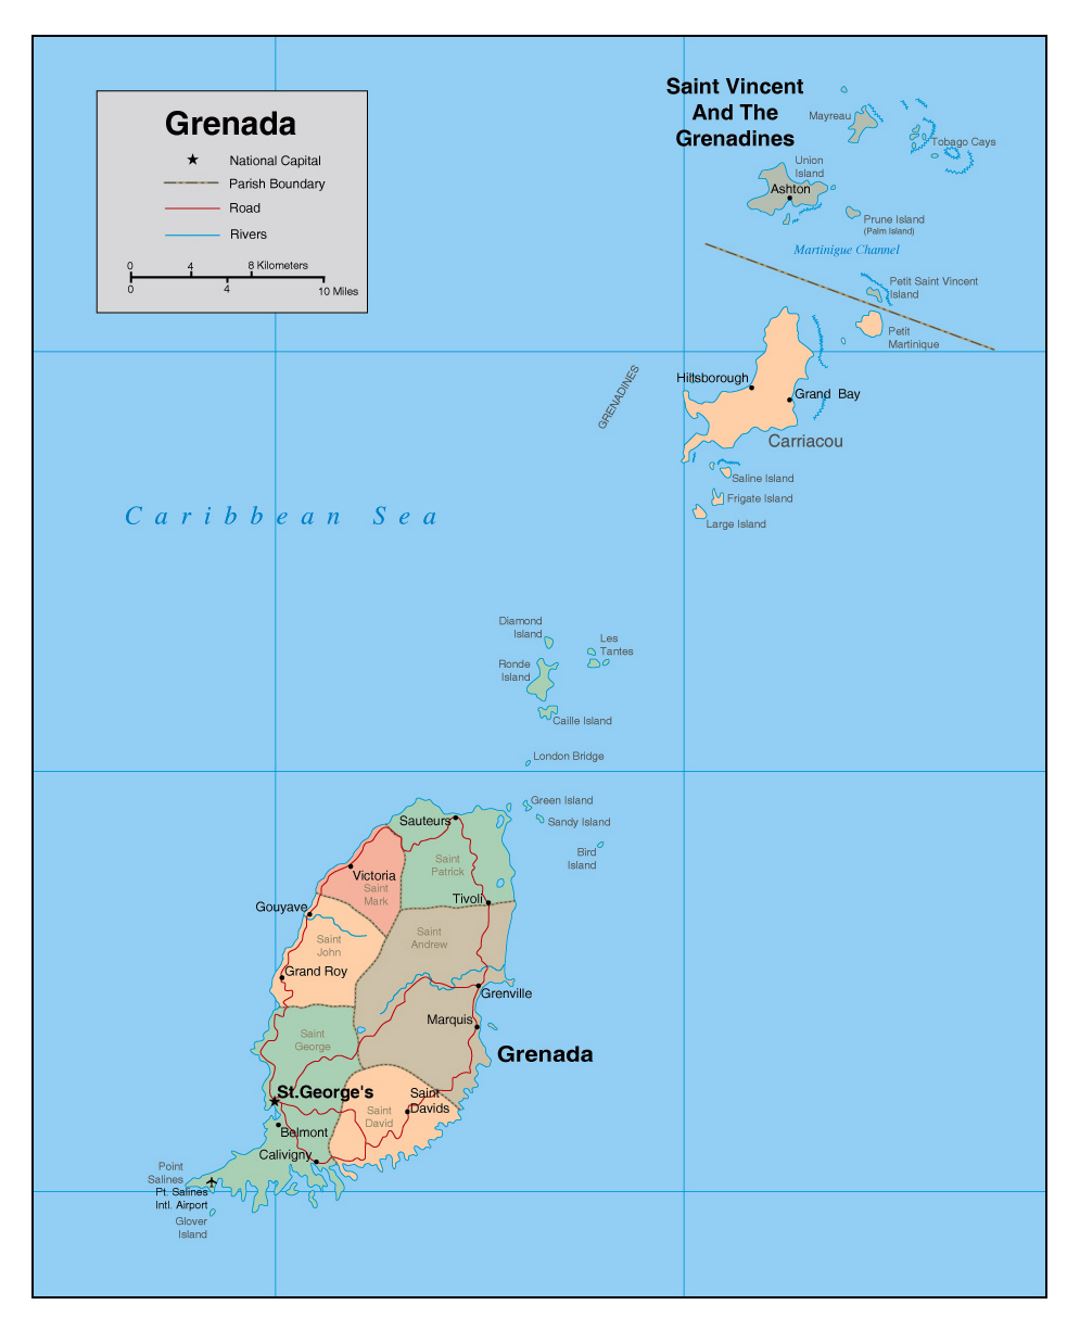 Детальная политическая и административная карта Гренады с дорогами, реками, аэропортами и крупными городами